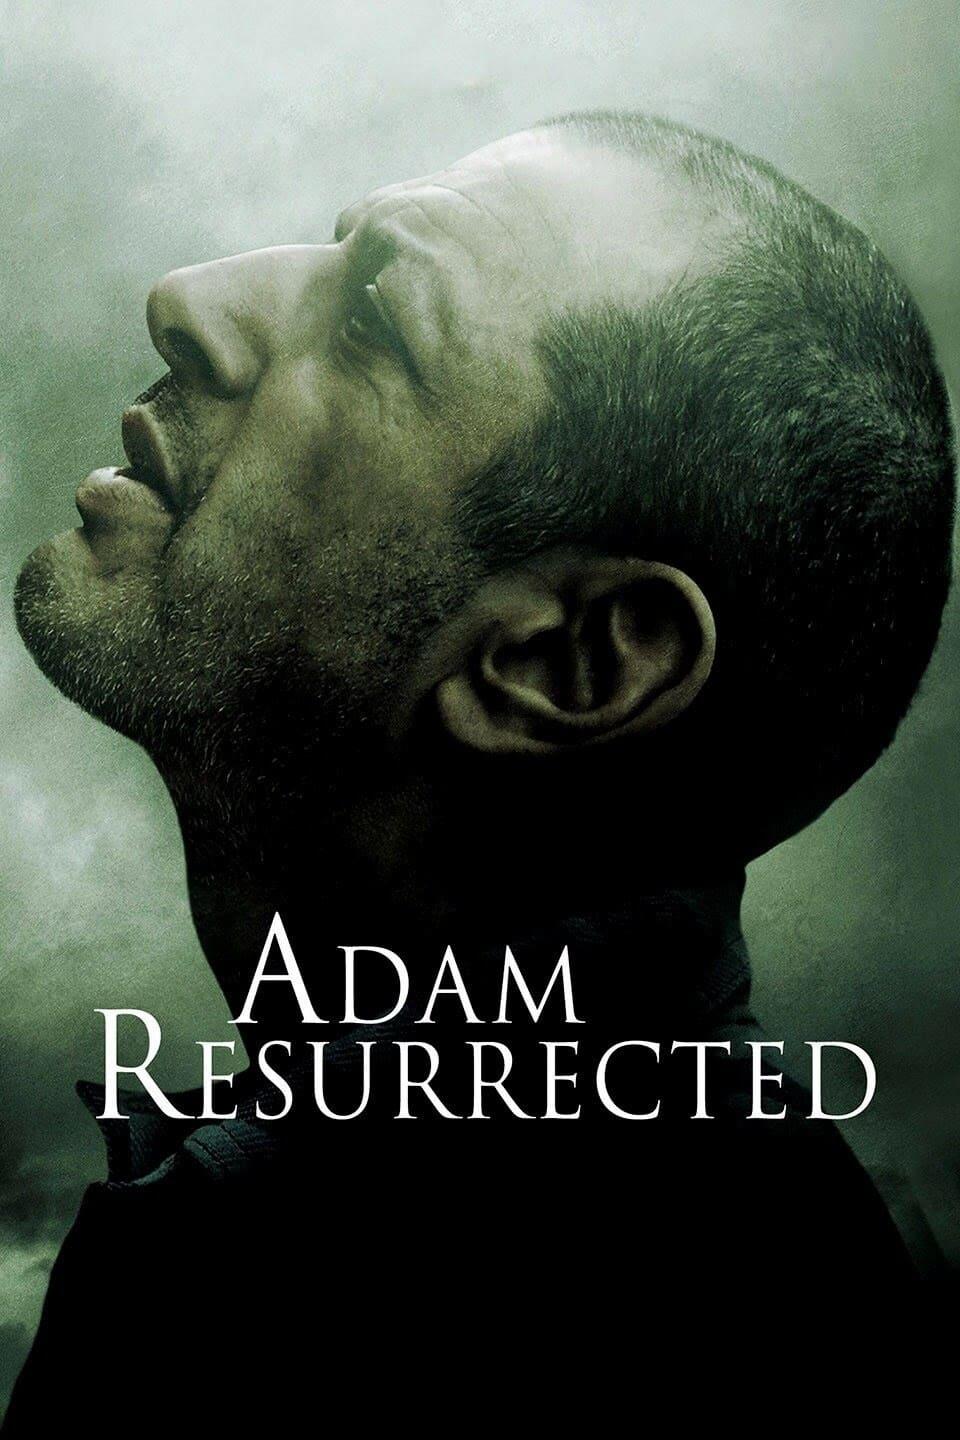 Adam Resurrected poster